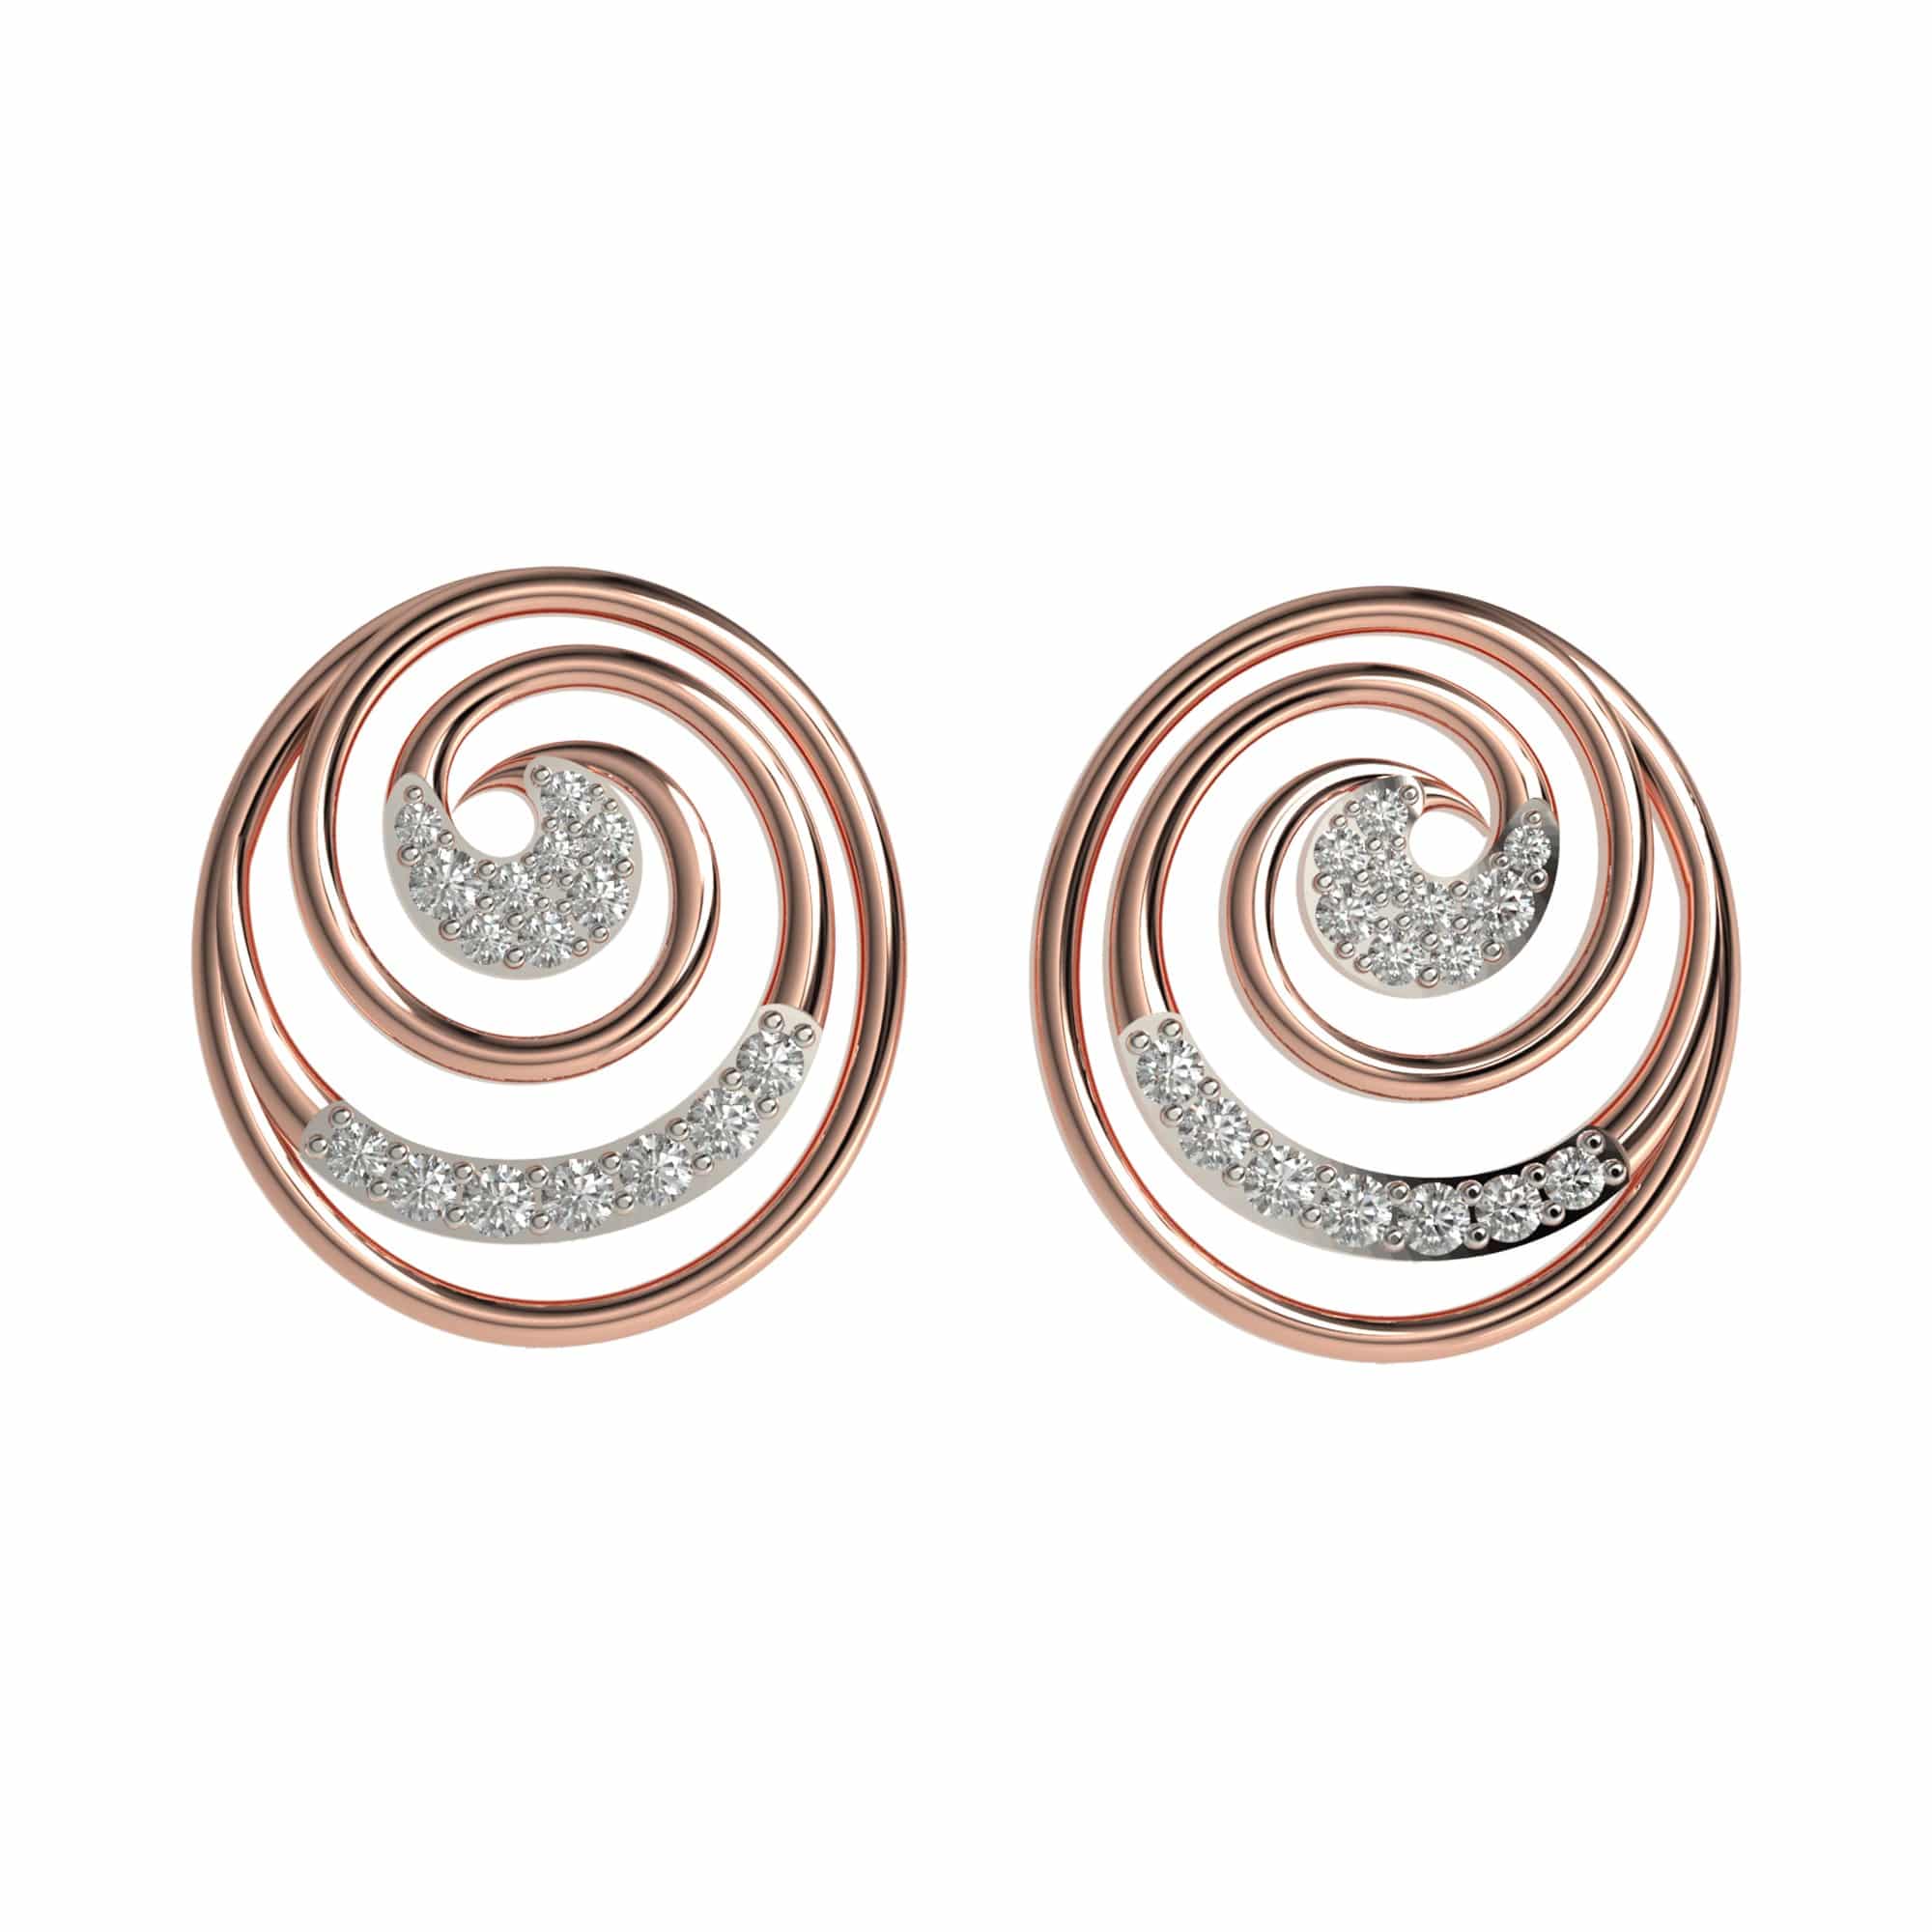 Hiara 92.5% Quad Multi Sterling Silver Stud Earrings, 3g